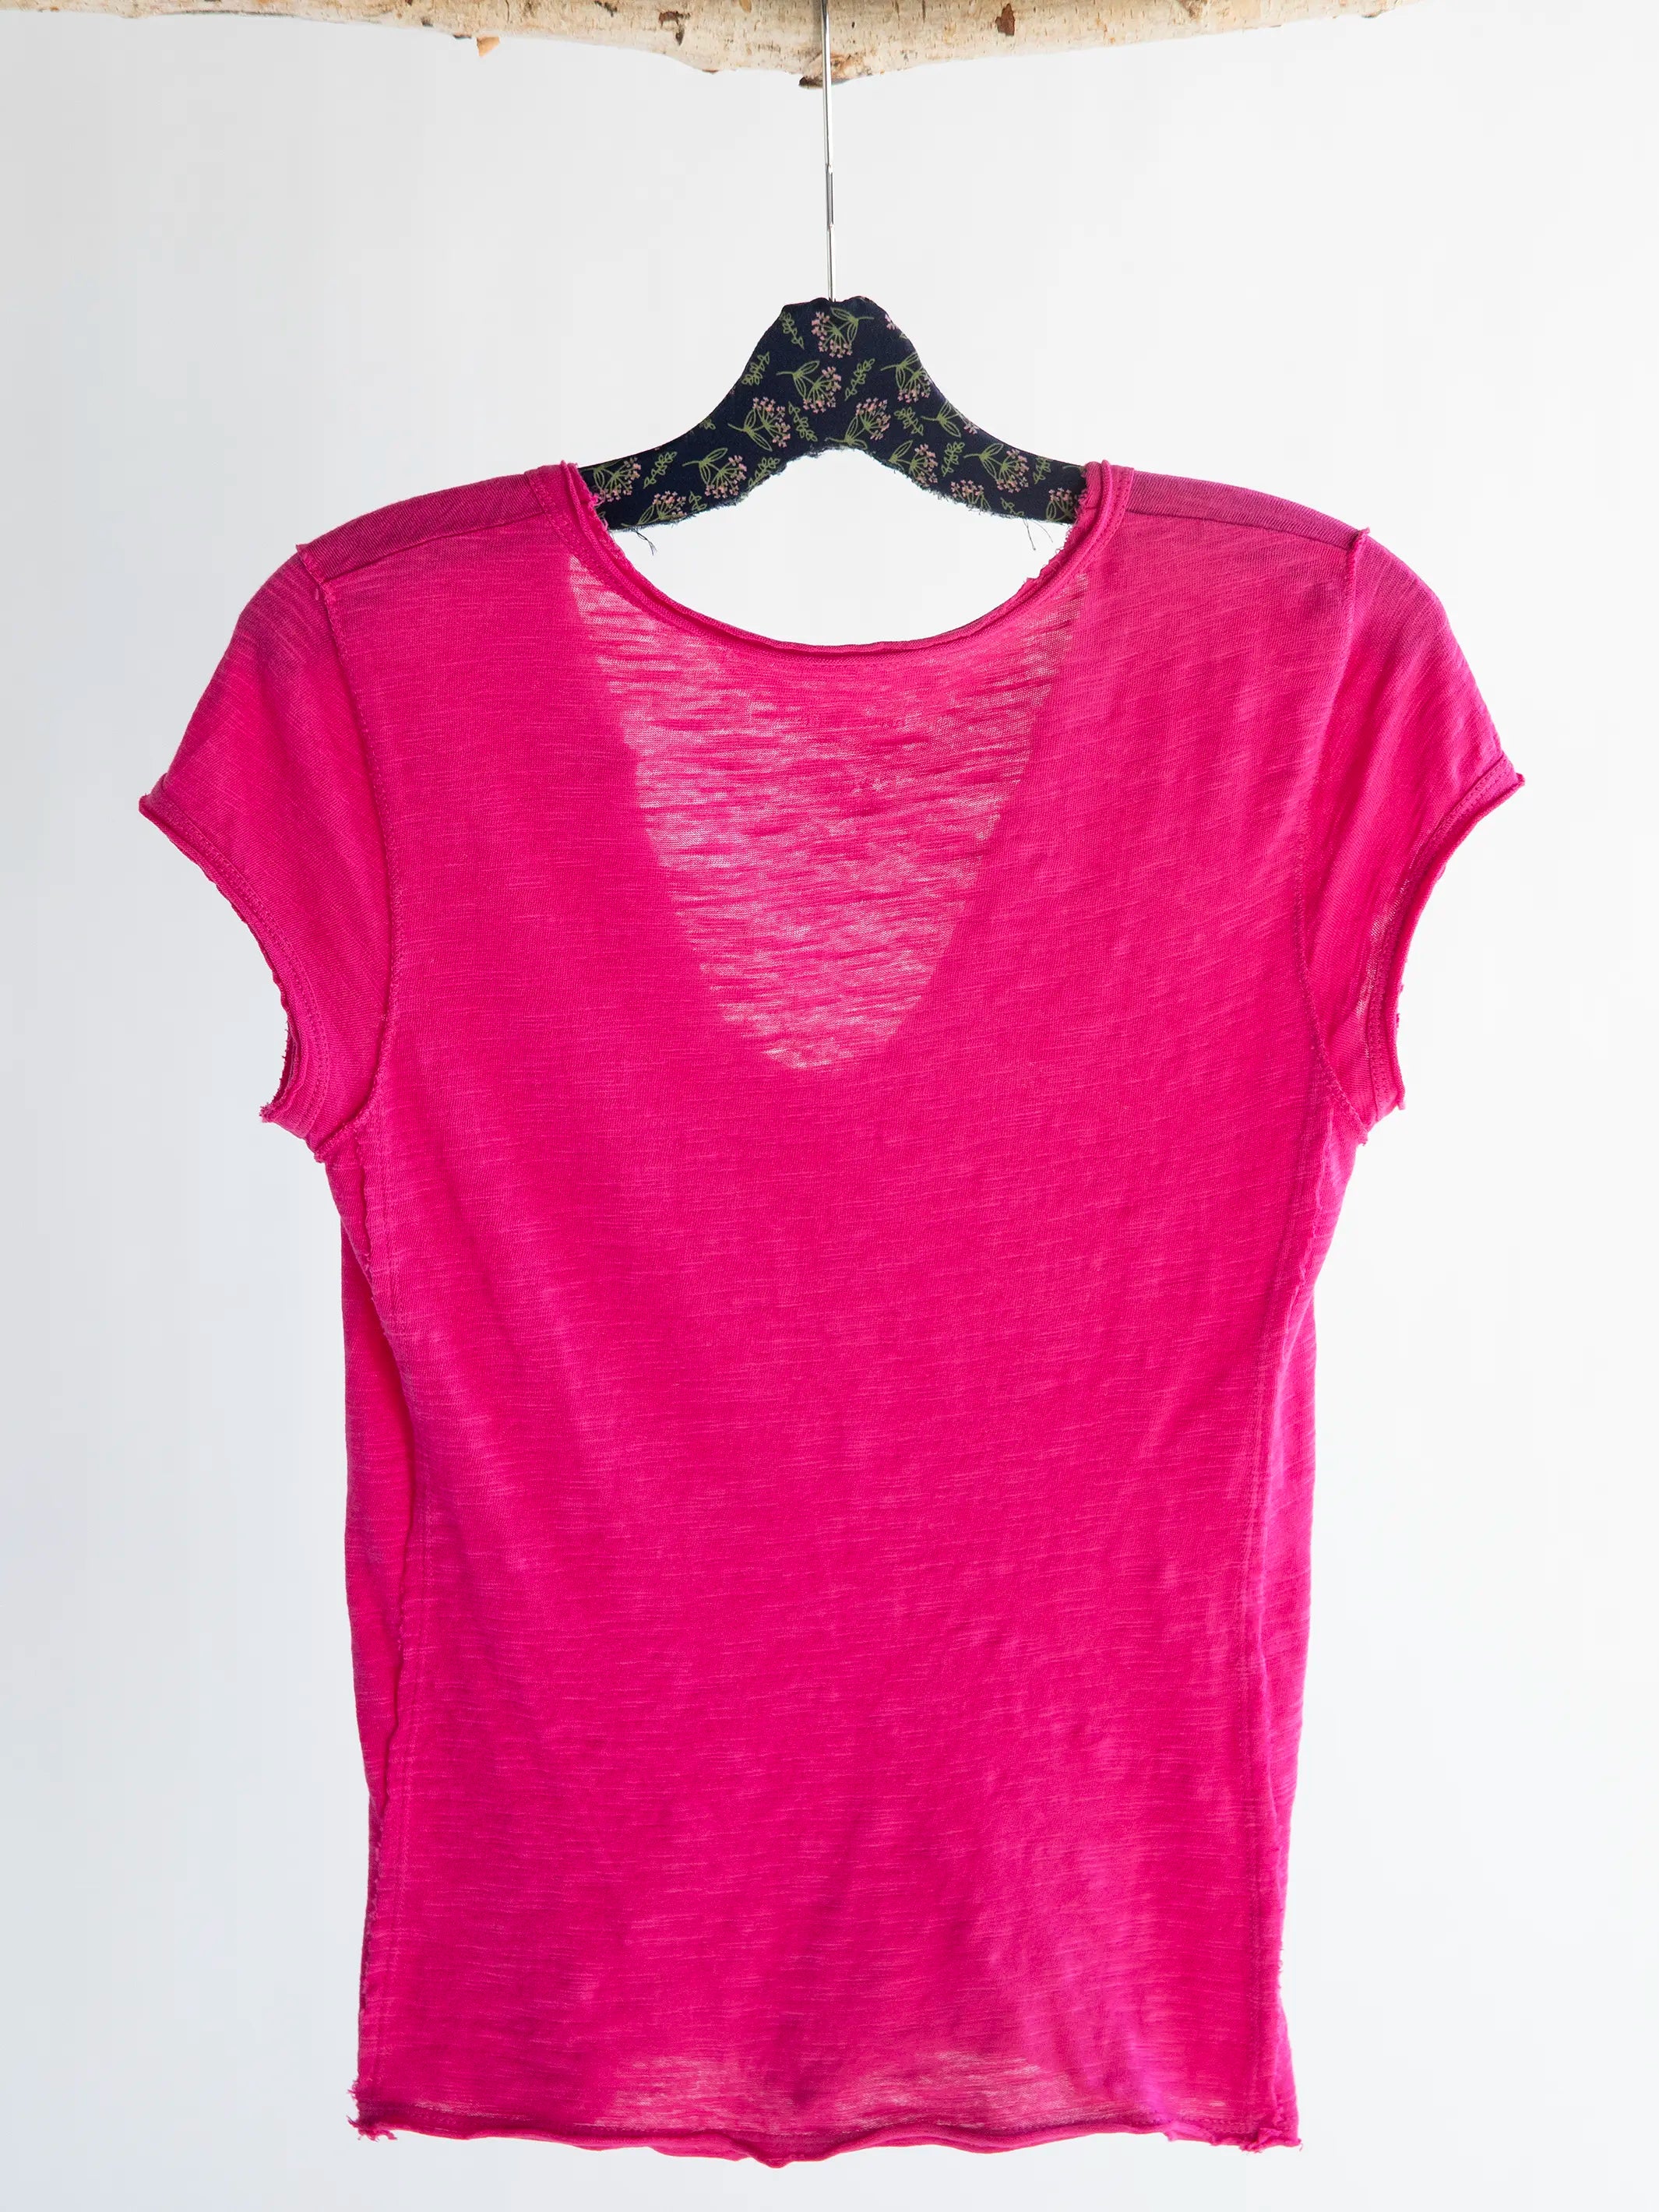 Molly Knit Tee Shirt - Charcoal – Natural Life